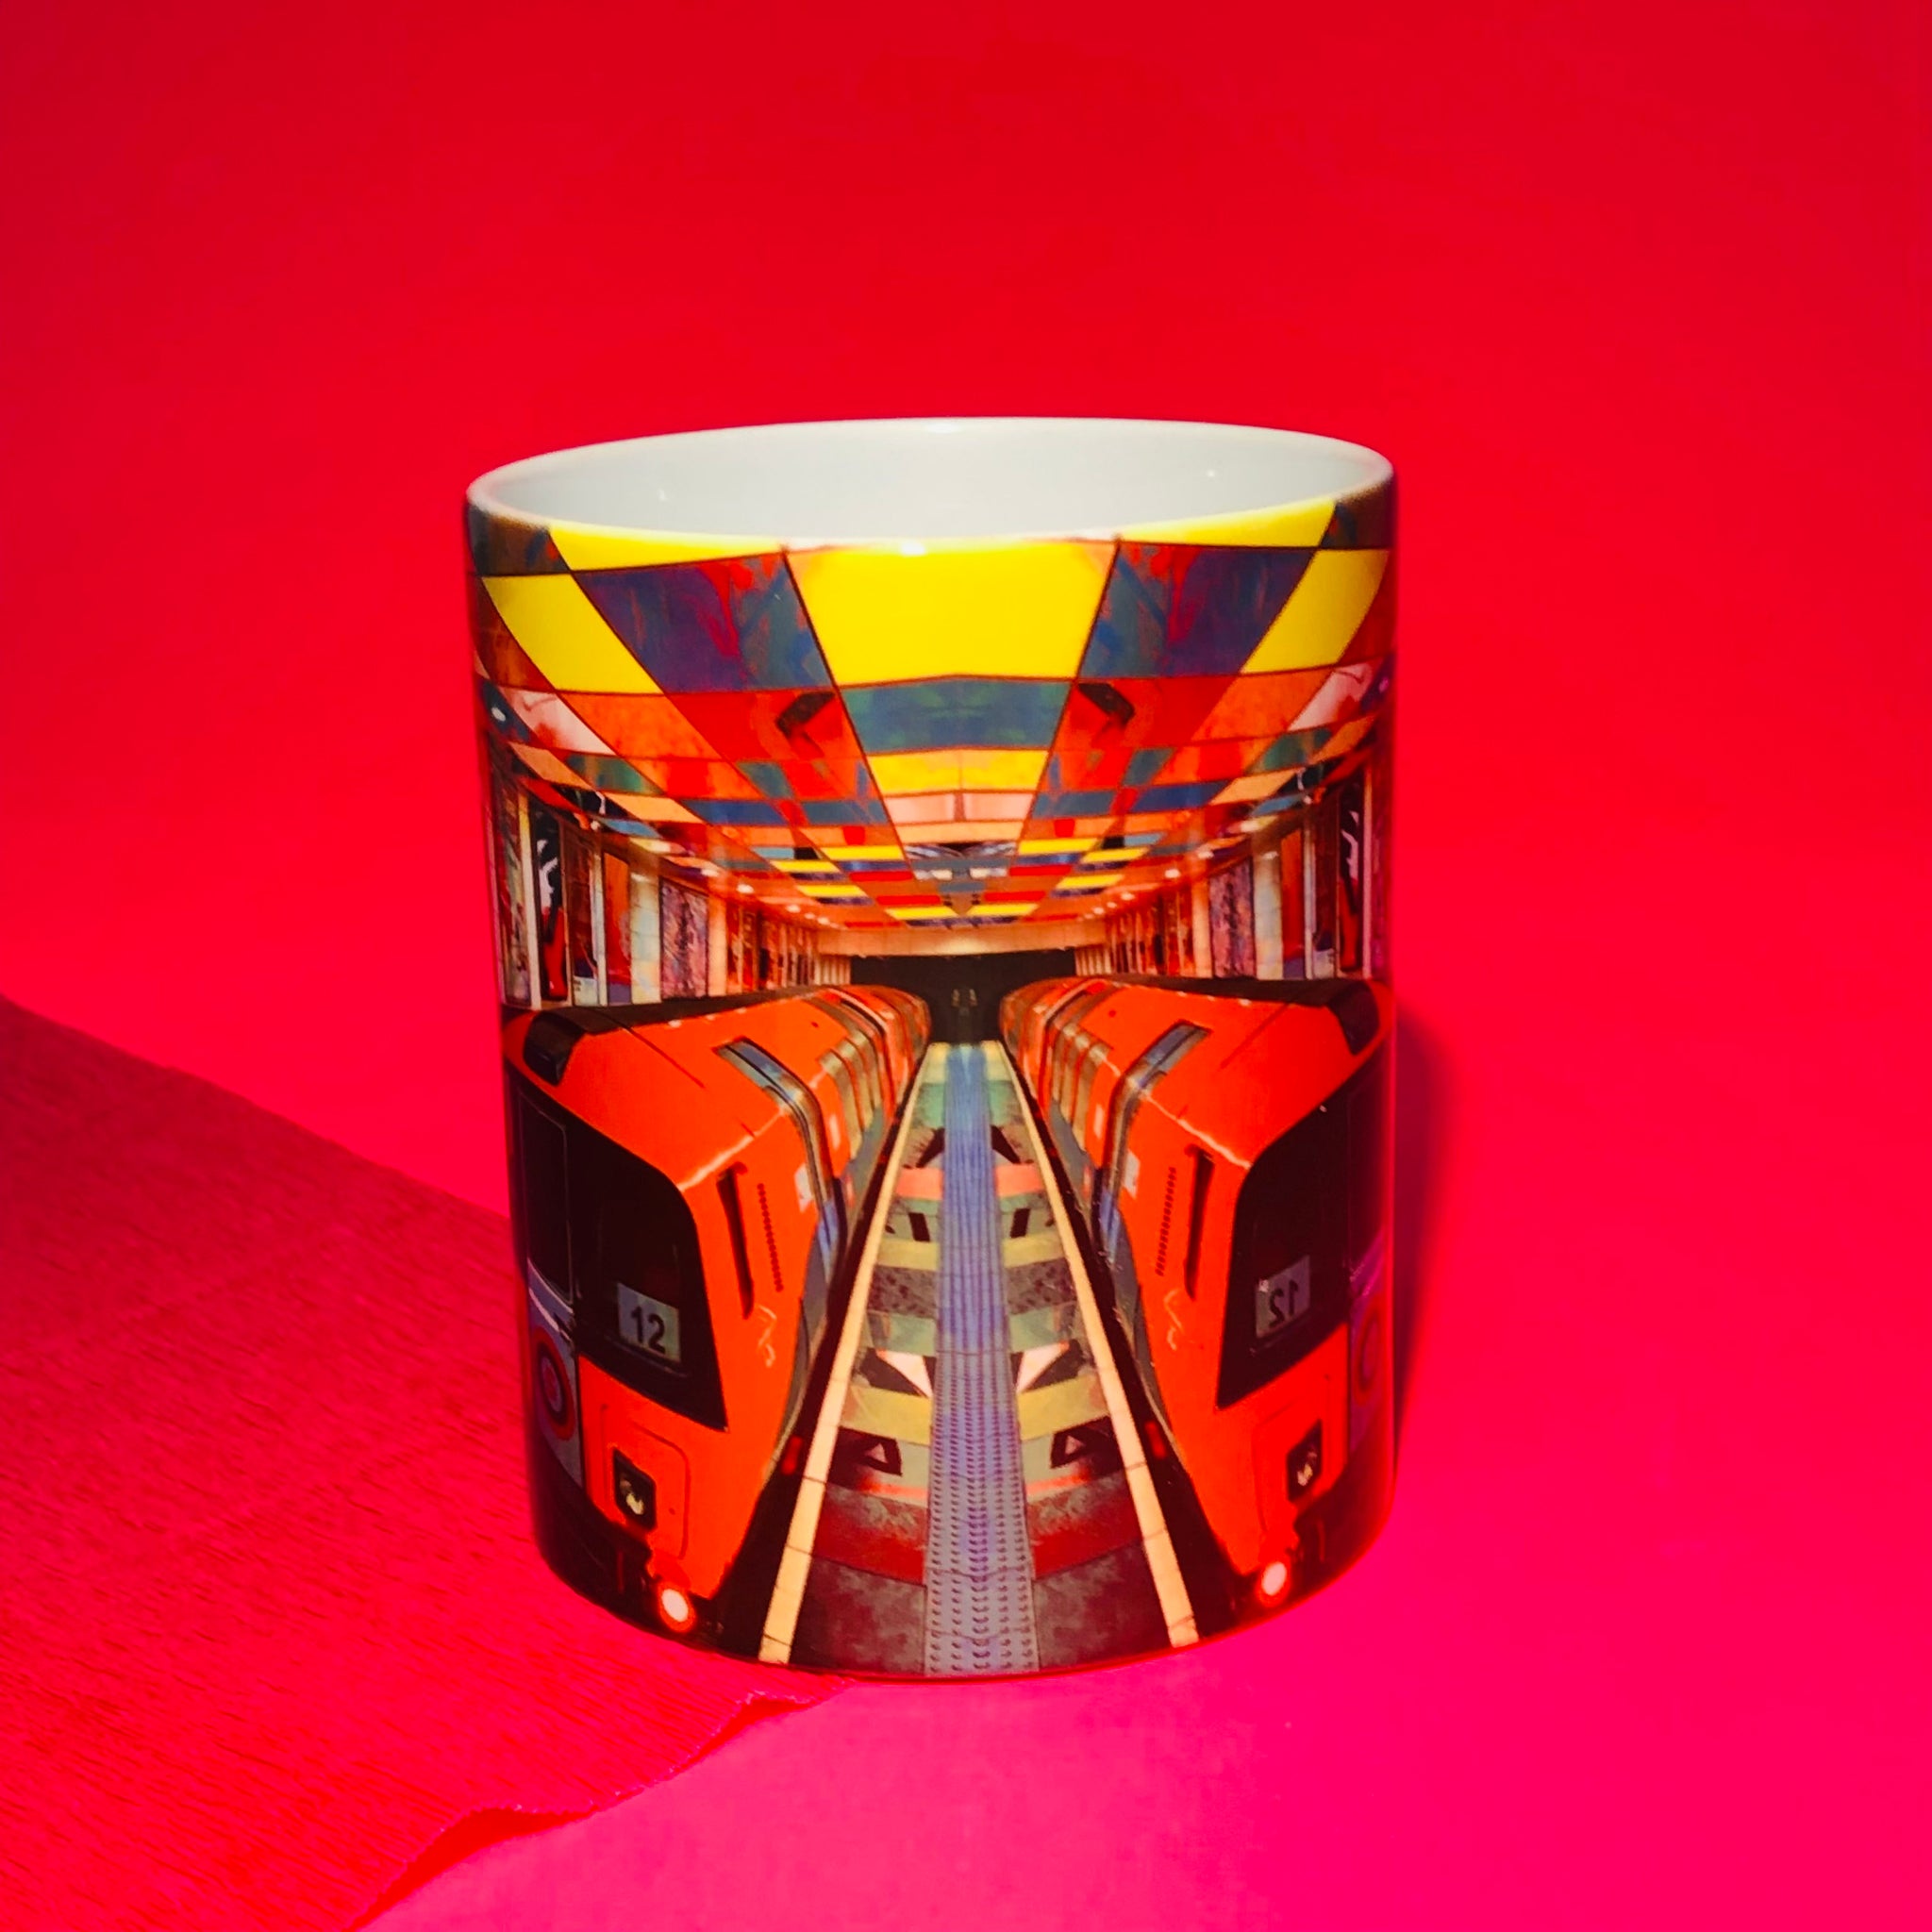 Clockwork Orange Mug